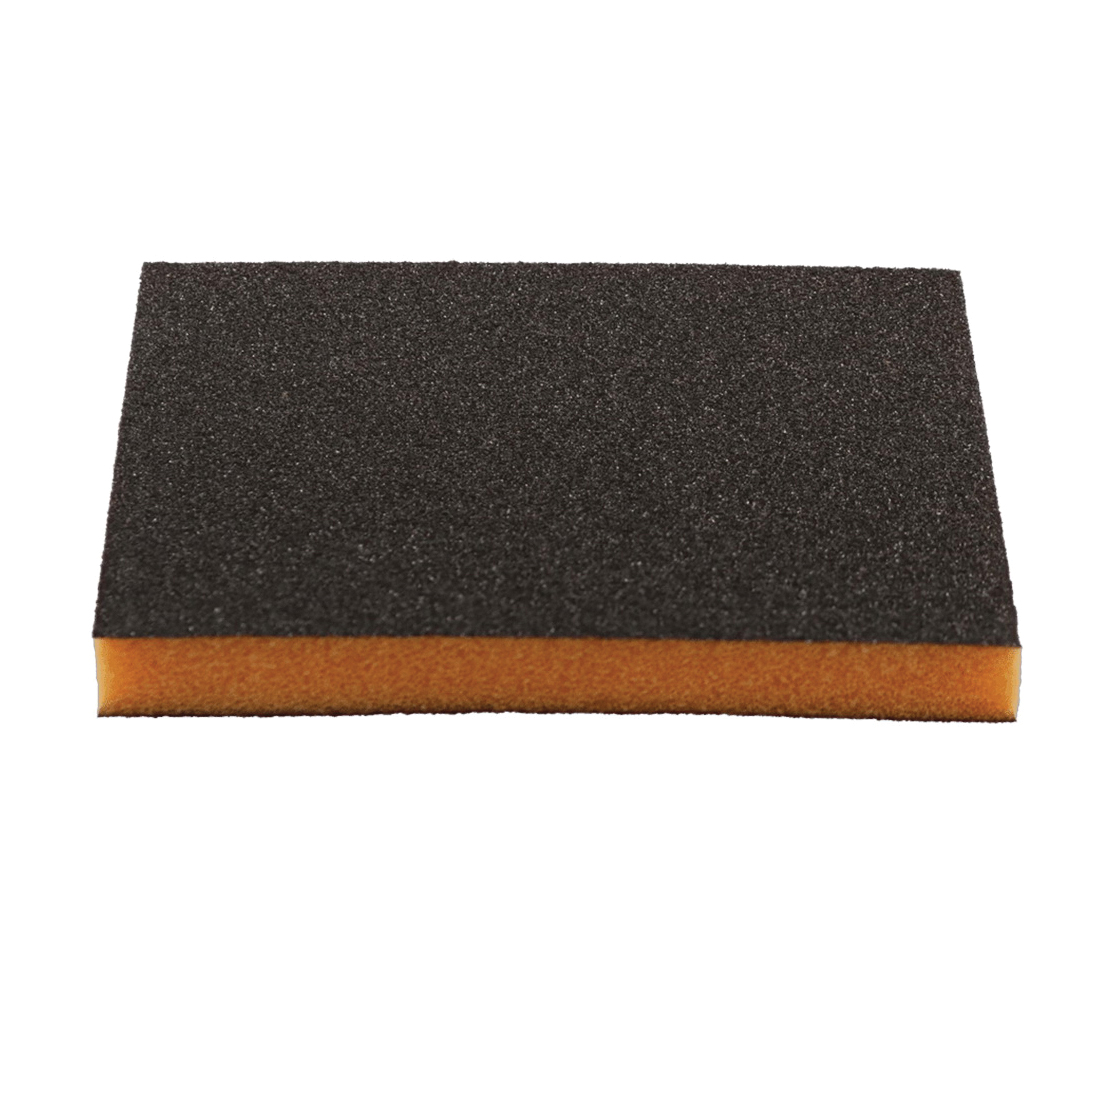 ULTRAflex DFPFLEXMED02G Sanding Sponge, 60 Grit, Medium, Aluminum Oxide Abrasive